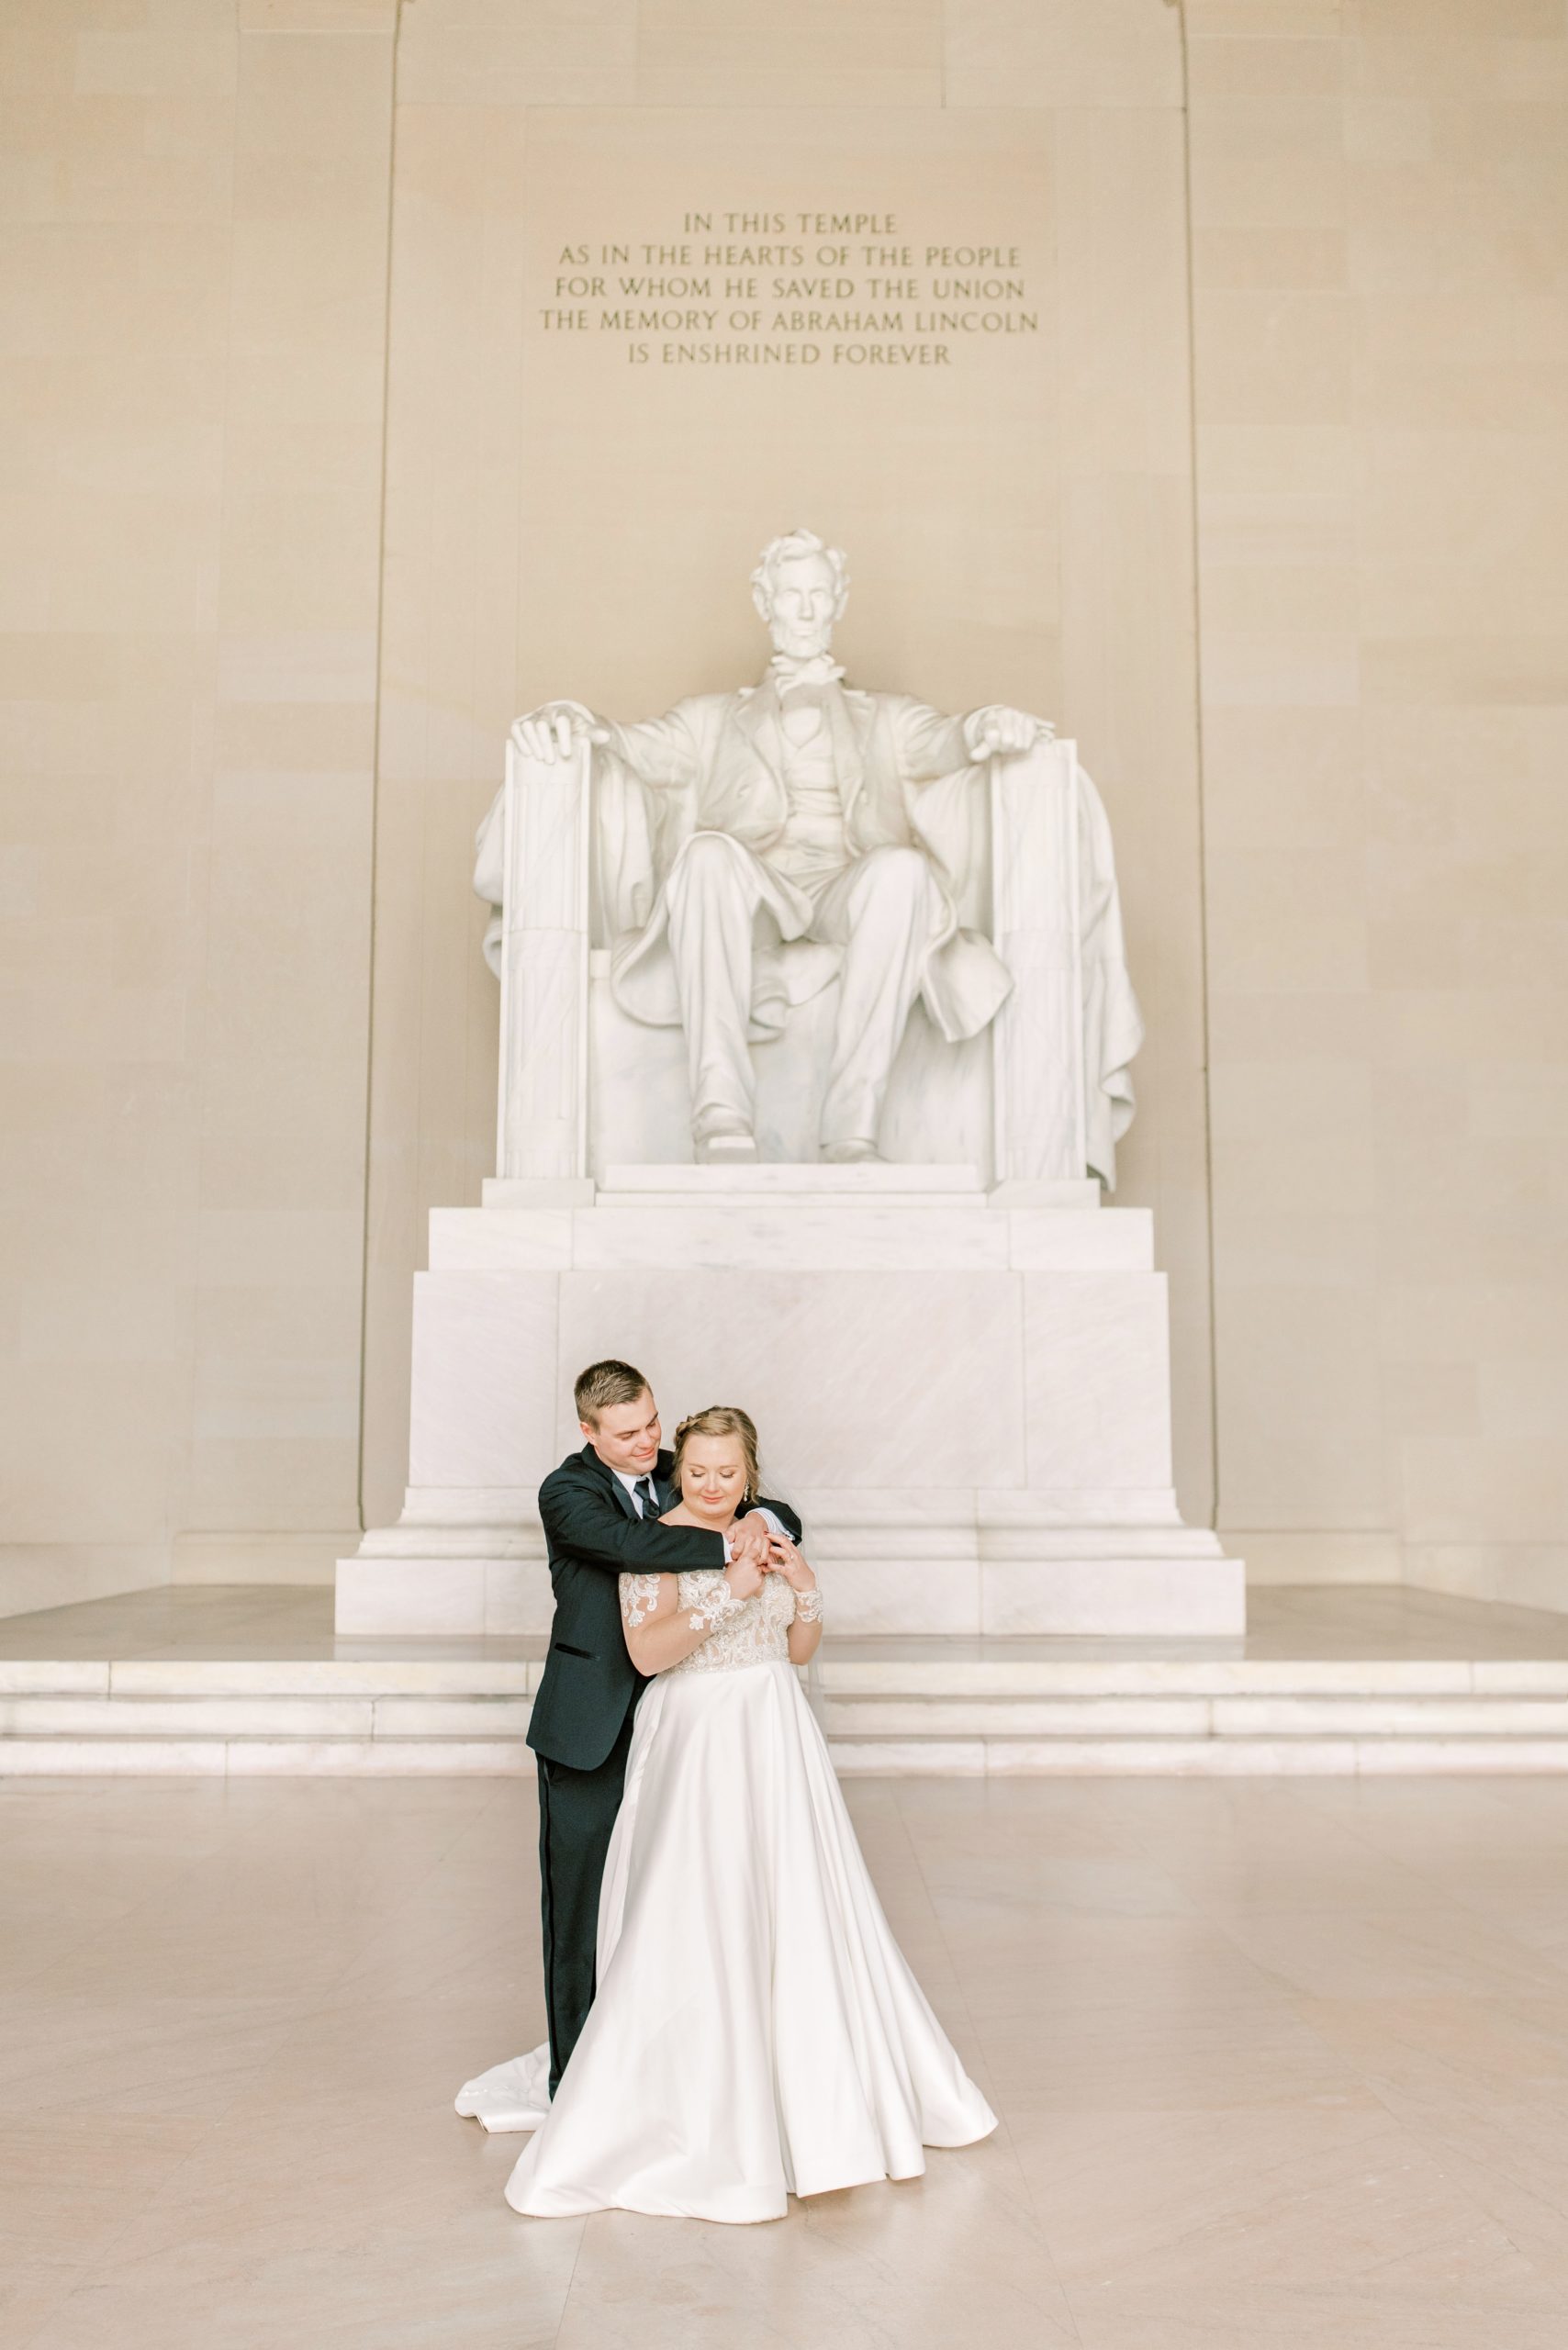 Lincoln Memorial Wedding Photos in DC